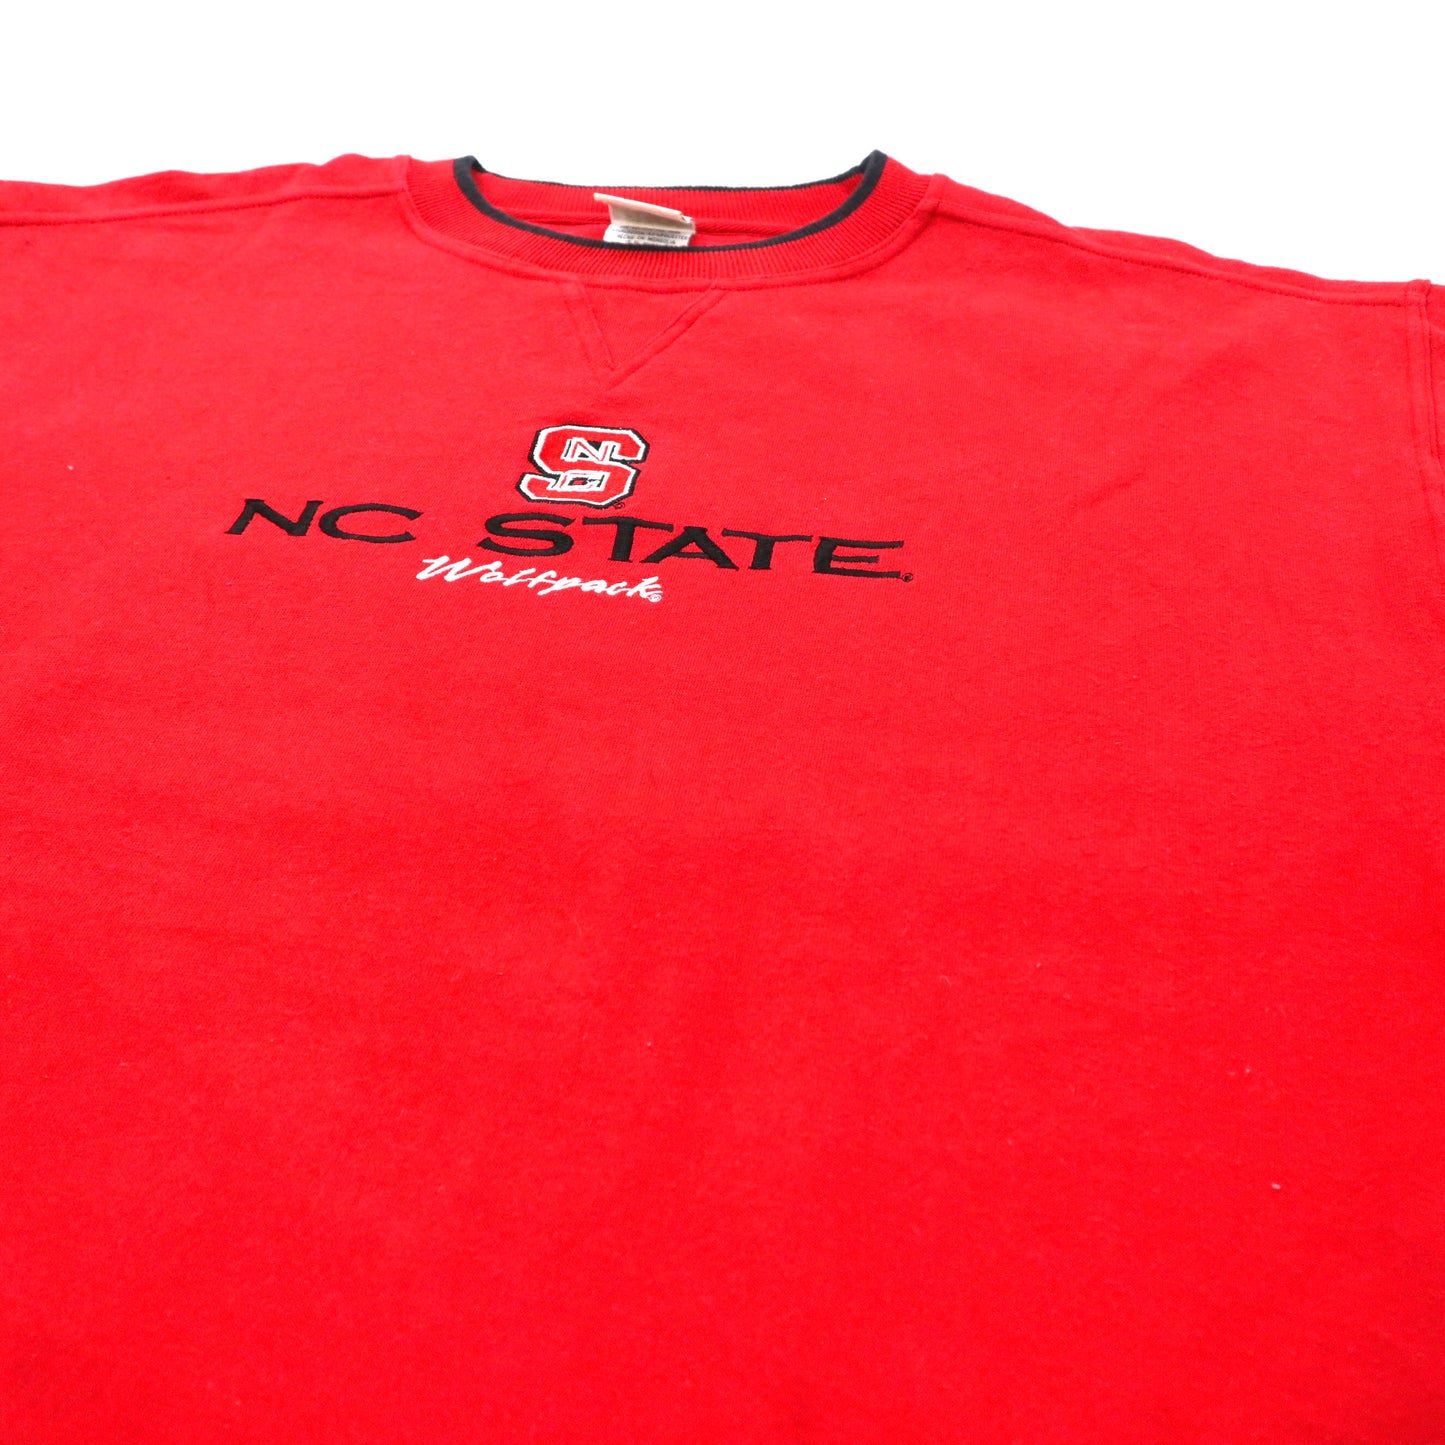 RED OAK ビッグサイズ スウェット XL レッド コットン 裏起毛 カレッジ フットボール NC STATE Wolfpack 90年代 モンゴル製